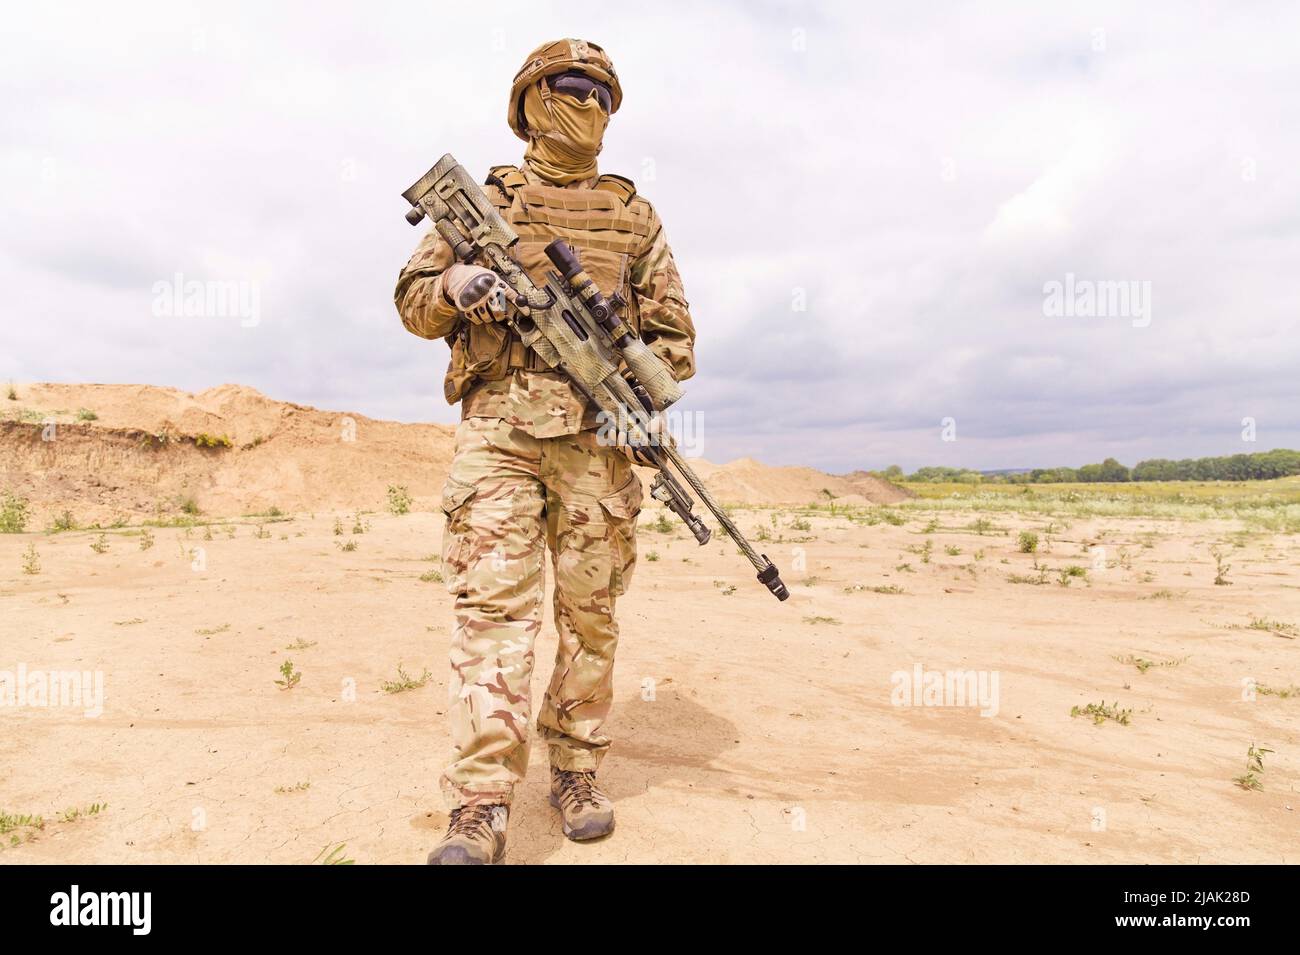 Soldat des forces spéciales armé et équipé d'un fusil de sniper debout dans le désert. Banque D'Images